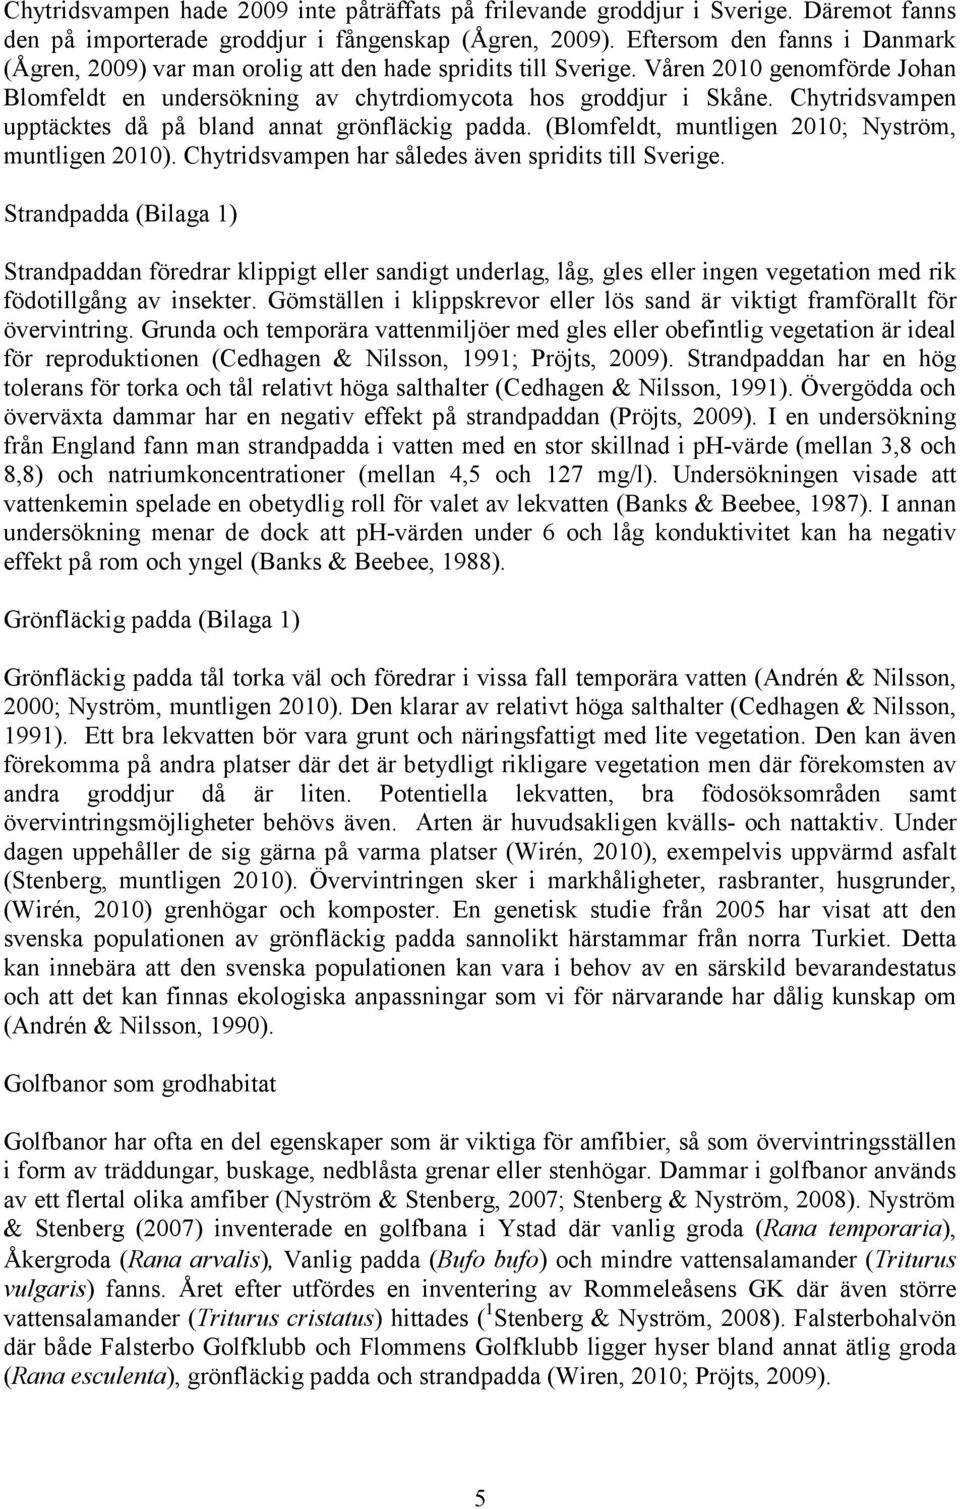 Chytridsvampen upptäcktes då på bland annat grönfläckig padda. (Blomfeldt, muntligen 2010; Nyström, muntligen 2010). Chytridsvampen har således även spridits till Sverige.